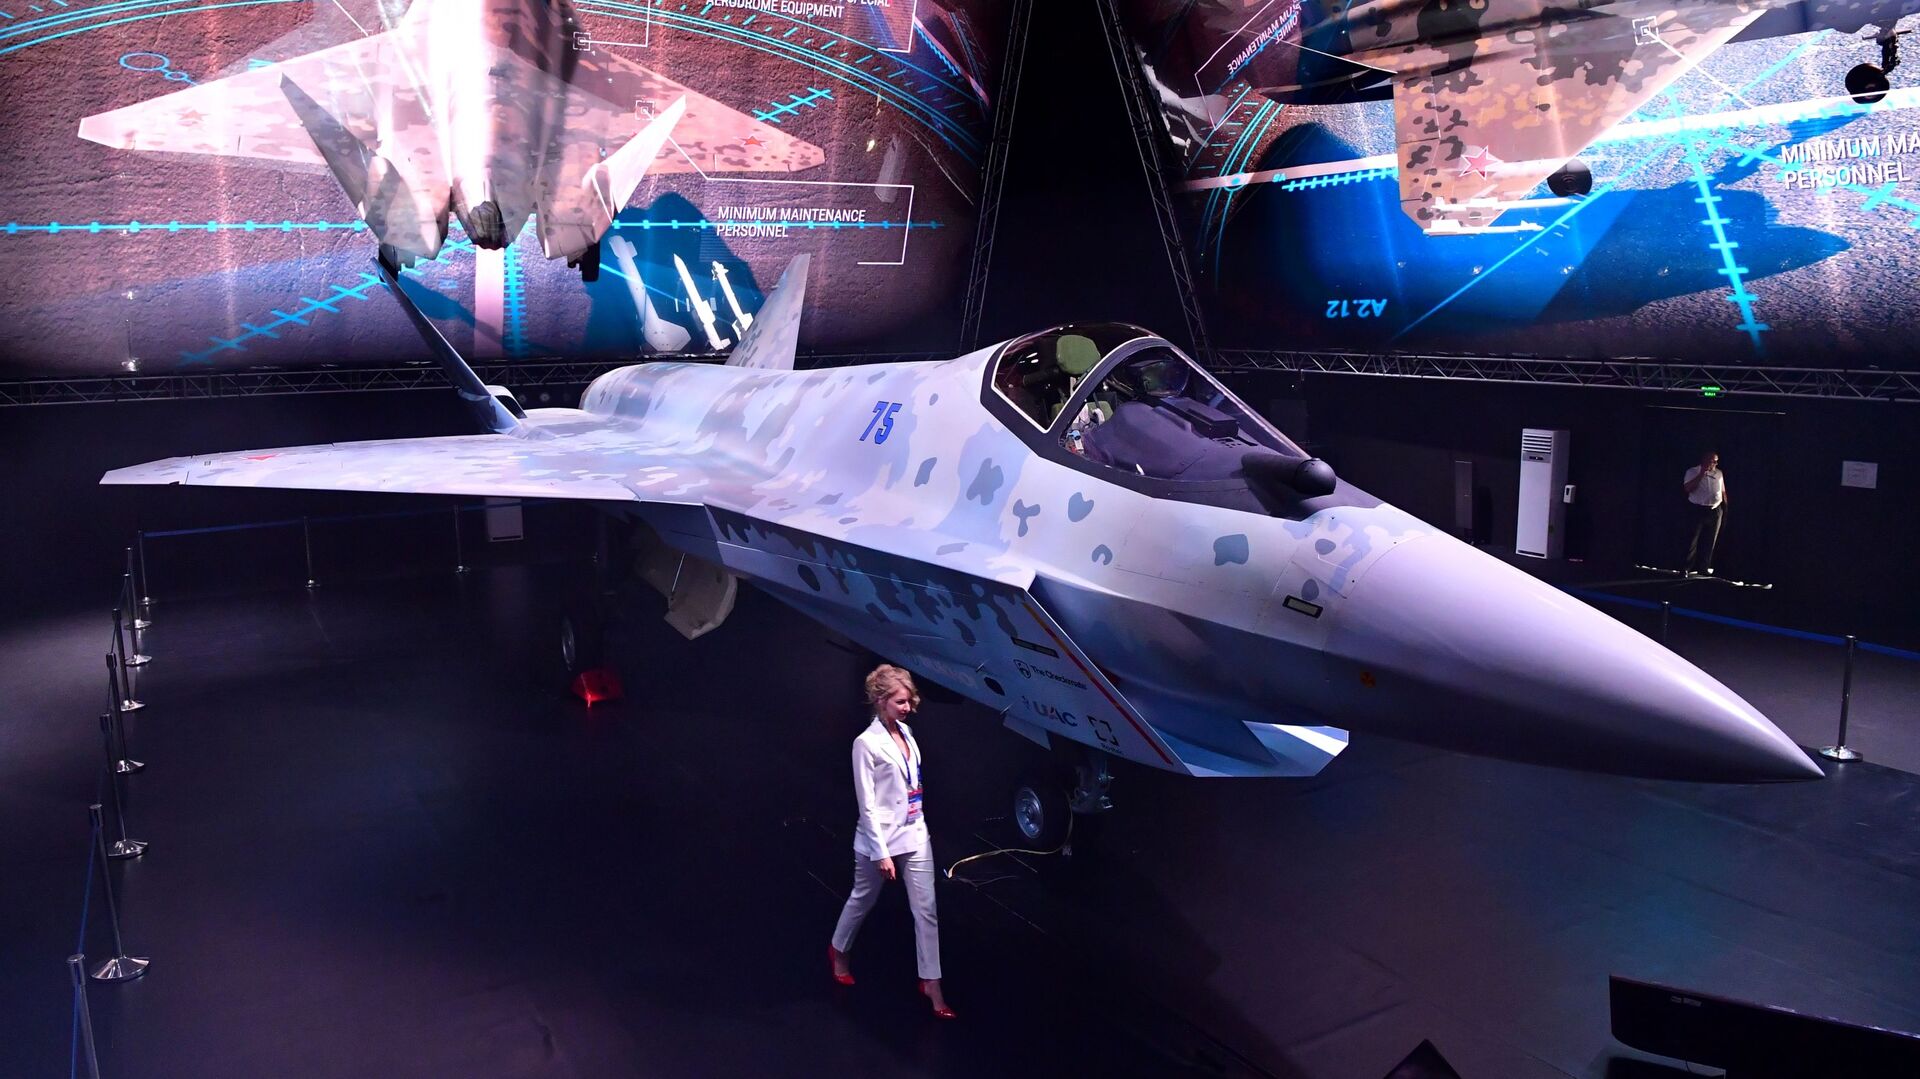 مقاتلة سوخوي تشيك ميت (كش ملك) في معرض الطيران والفضاء الدولي ماكس 2021 في جوكوفسكي، ضواحي موسكو، روسيا 20 يوليو 2021 - سبوتنيك عربي, 1920, 28.07.2021